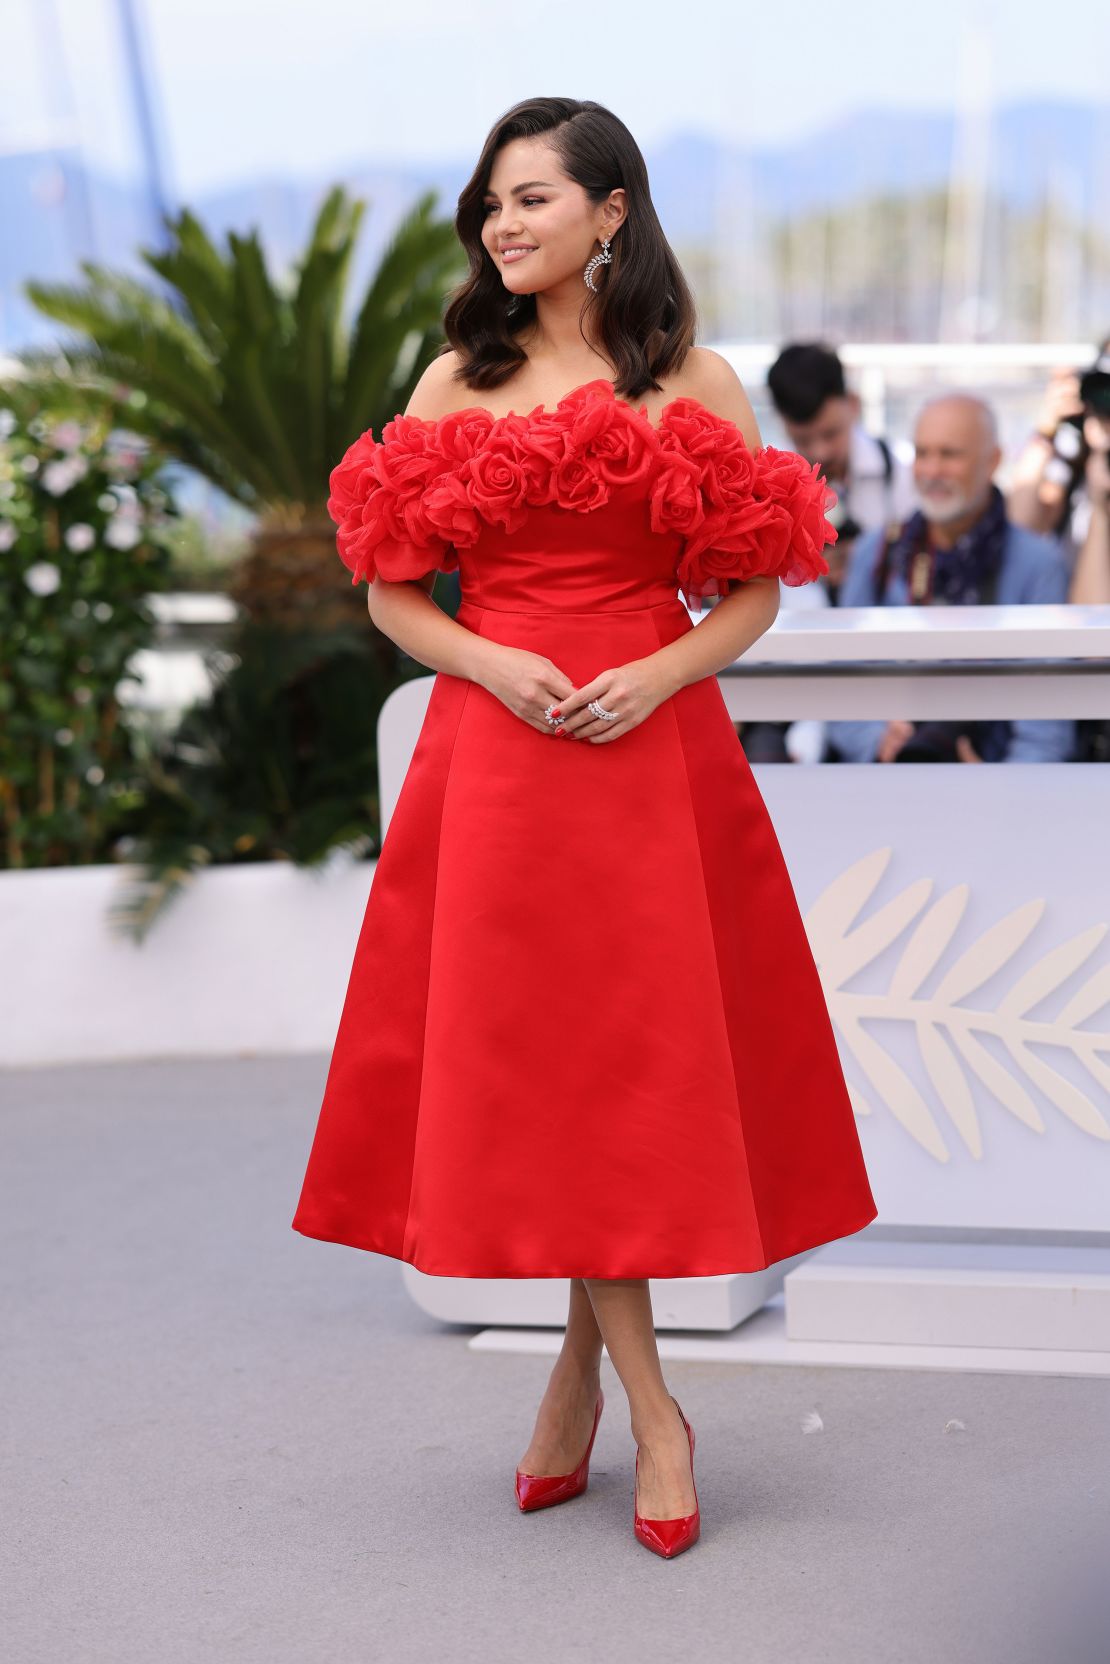 Selena Gomez in Giambattista Valli couture on May 19.